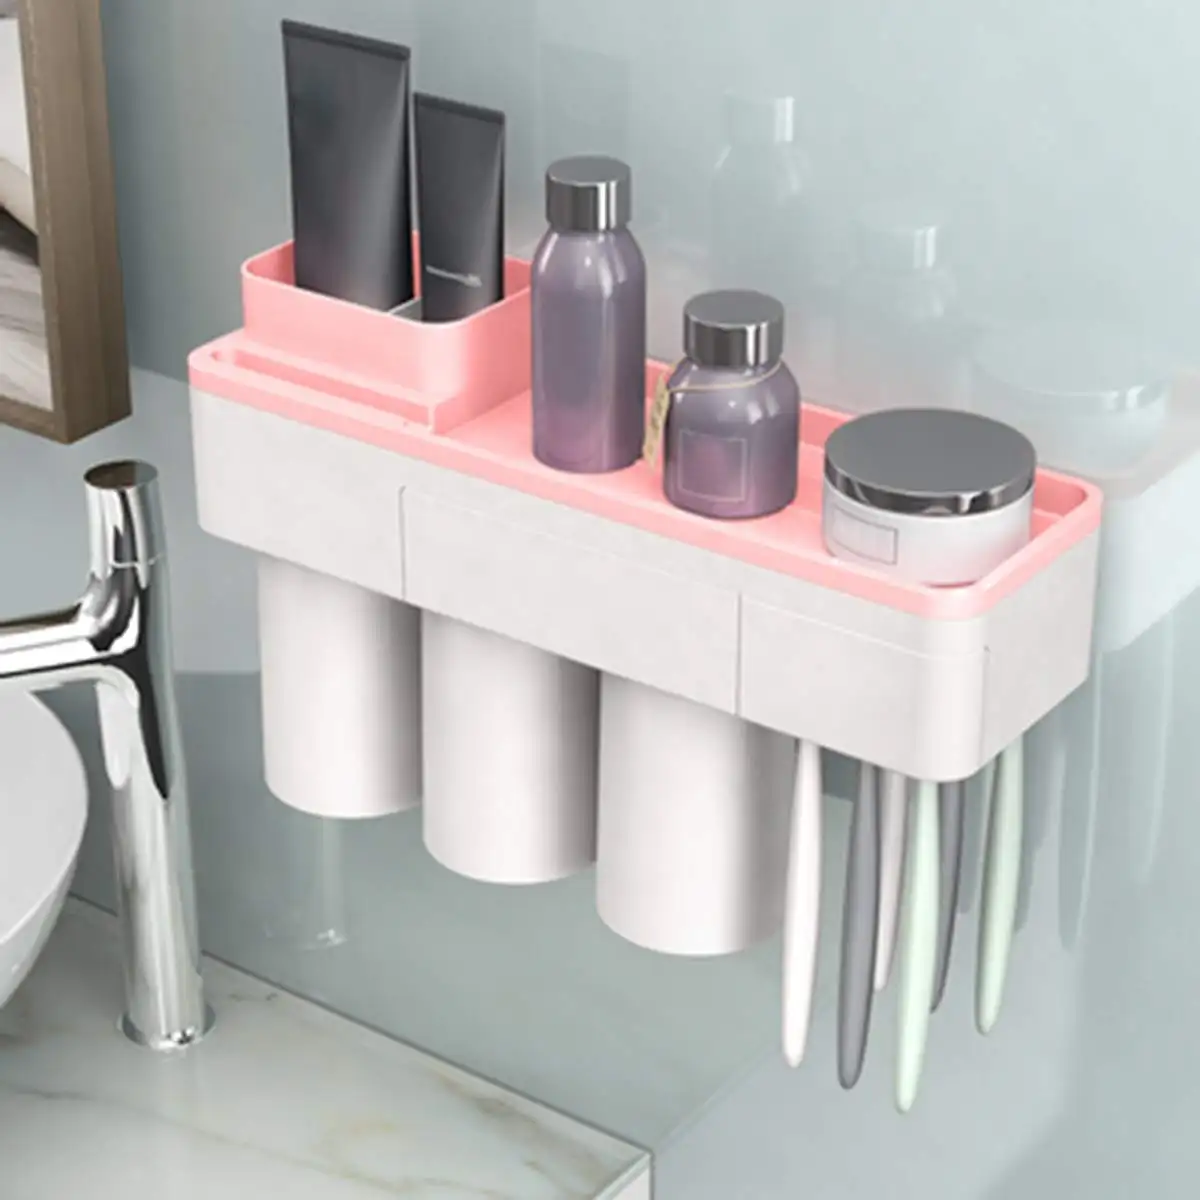 3 цвета Магнитный пластиковый держатель для зубных щеток стеллаж для хранения полки Аксессуары для ванной комнаты Набор 2/3 чашки, дома, отеля, Ванная комната организатор - Цвет: Pink 3 Cups